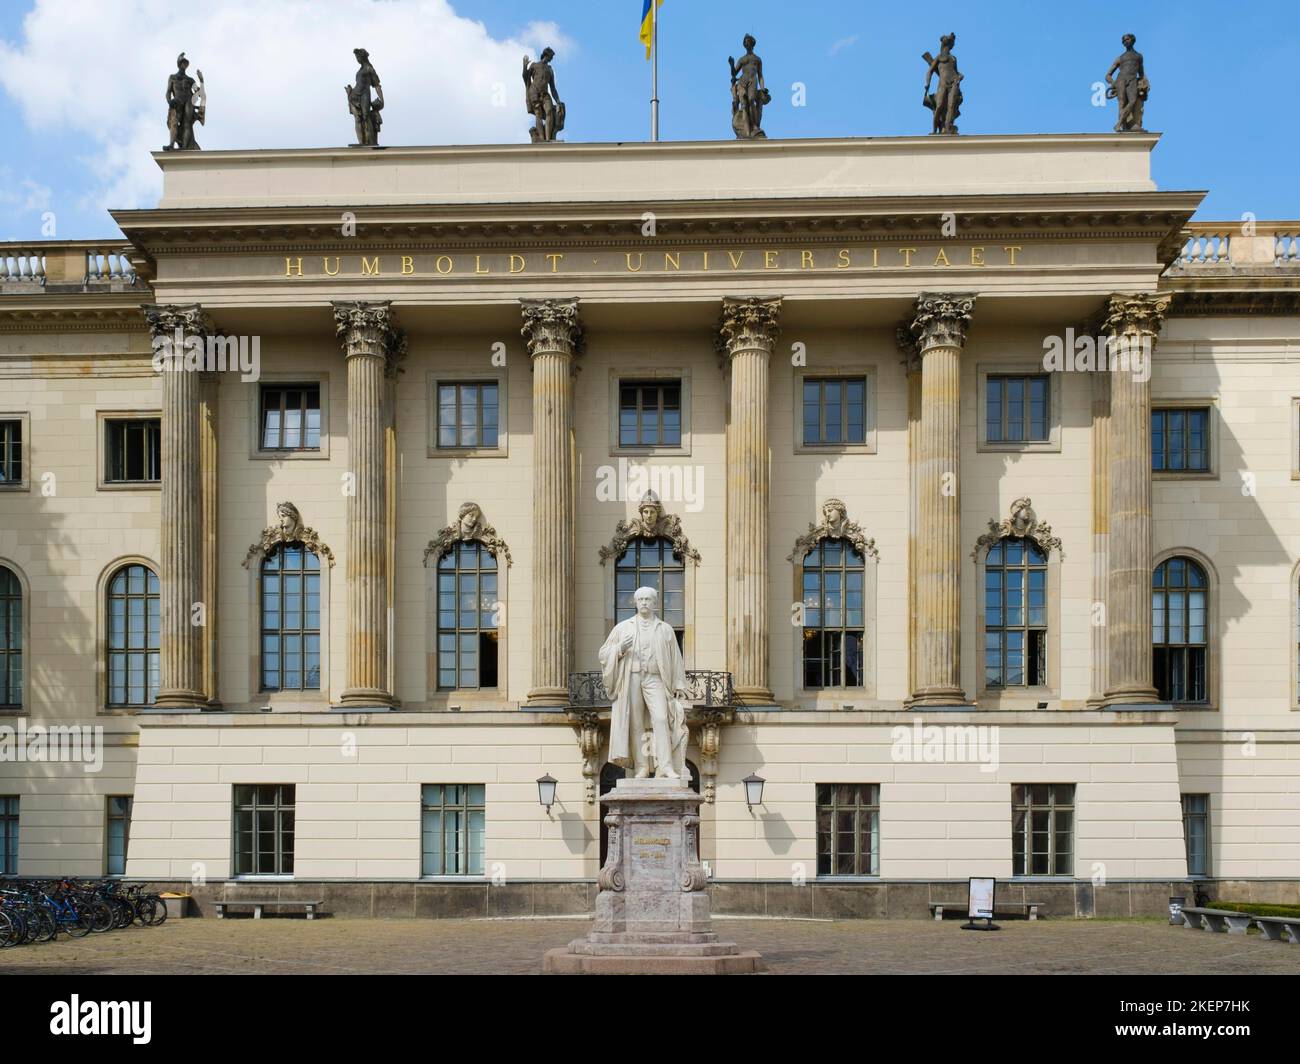 Humboldt University with Hermann von Helmholtz Monument, Unter den Linden, Berlin, Germany Stock Photo